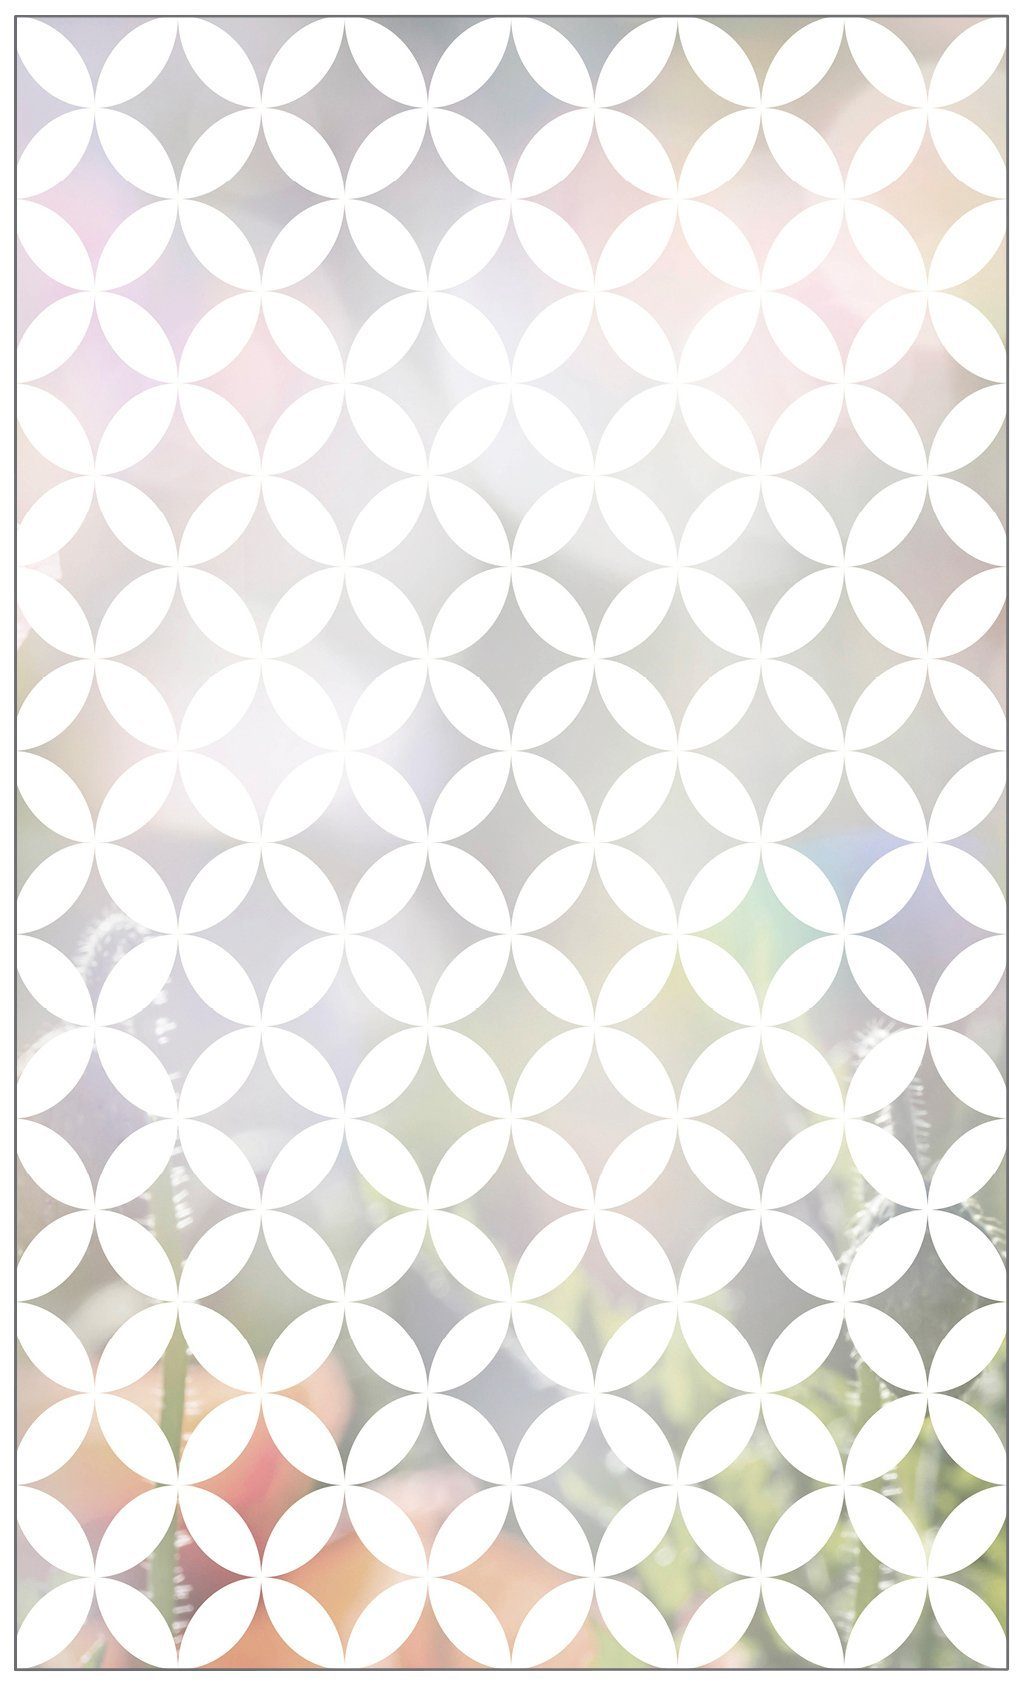 Fensterfolie Look Chadi white, MySpotti, halbtransparent, glatt, 60 x 100 cm, statisch haftend | Fensterfolien